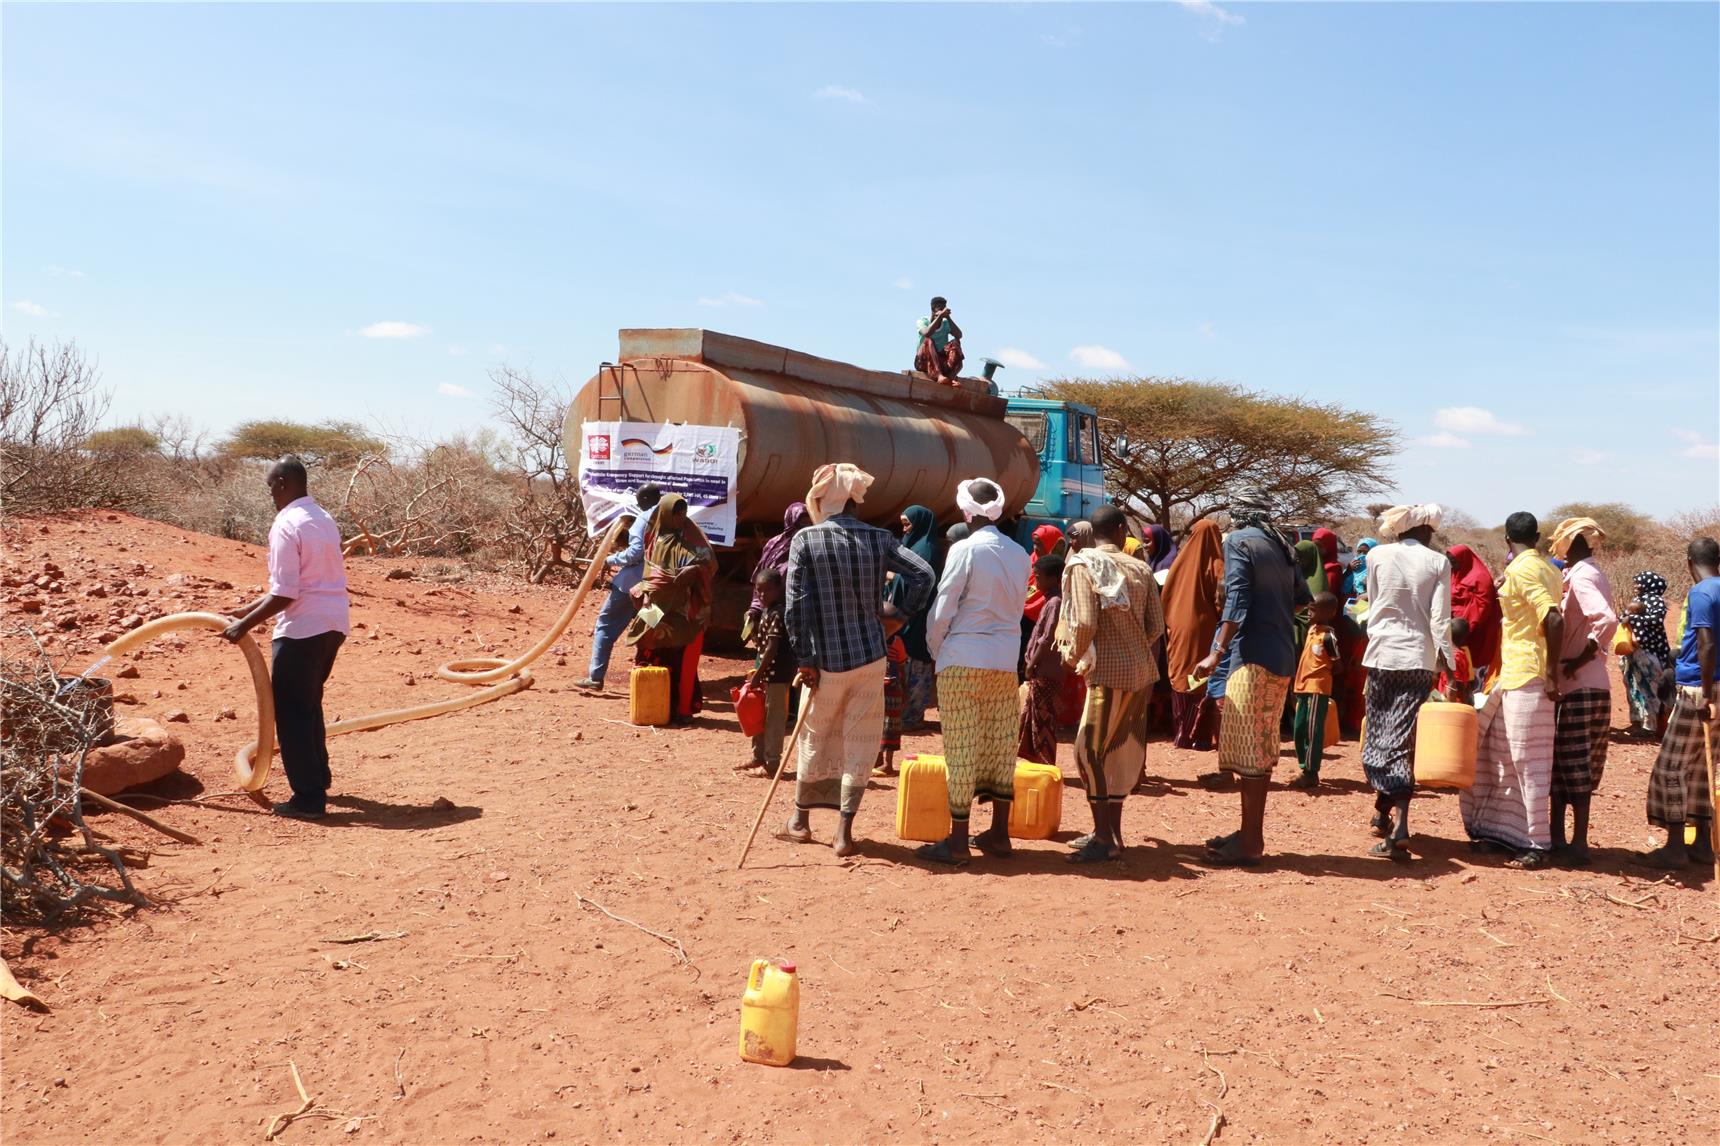 Die Themen der Klimakonferenz sind akut: in Somalia sorgt die Dürre für Wasserknappheit, sodass Menschen mit Wassertrucks versorgt werden müssen.